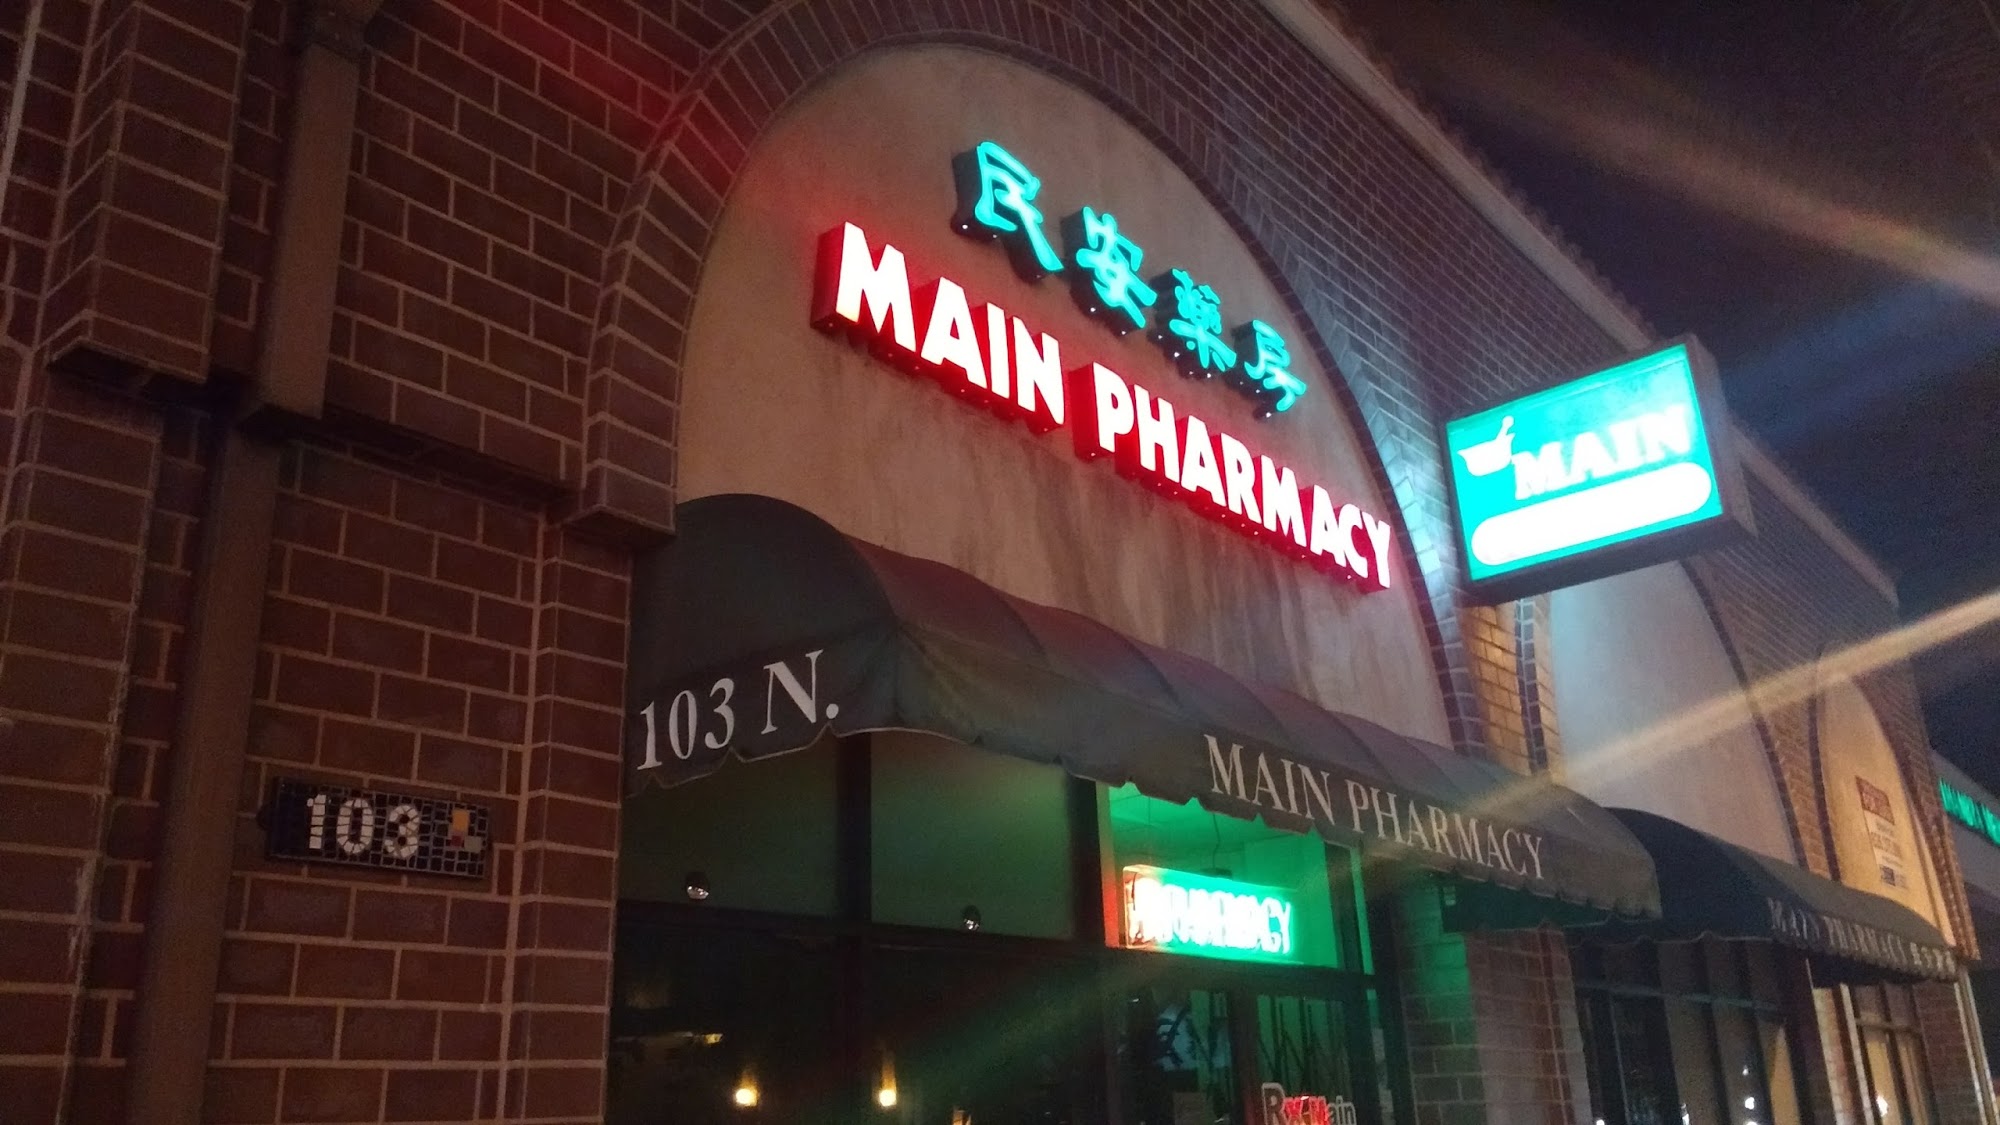 Main Pharmacy